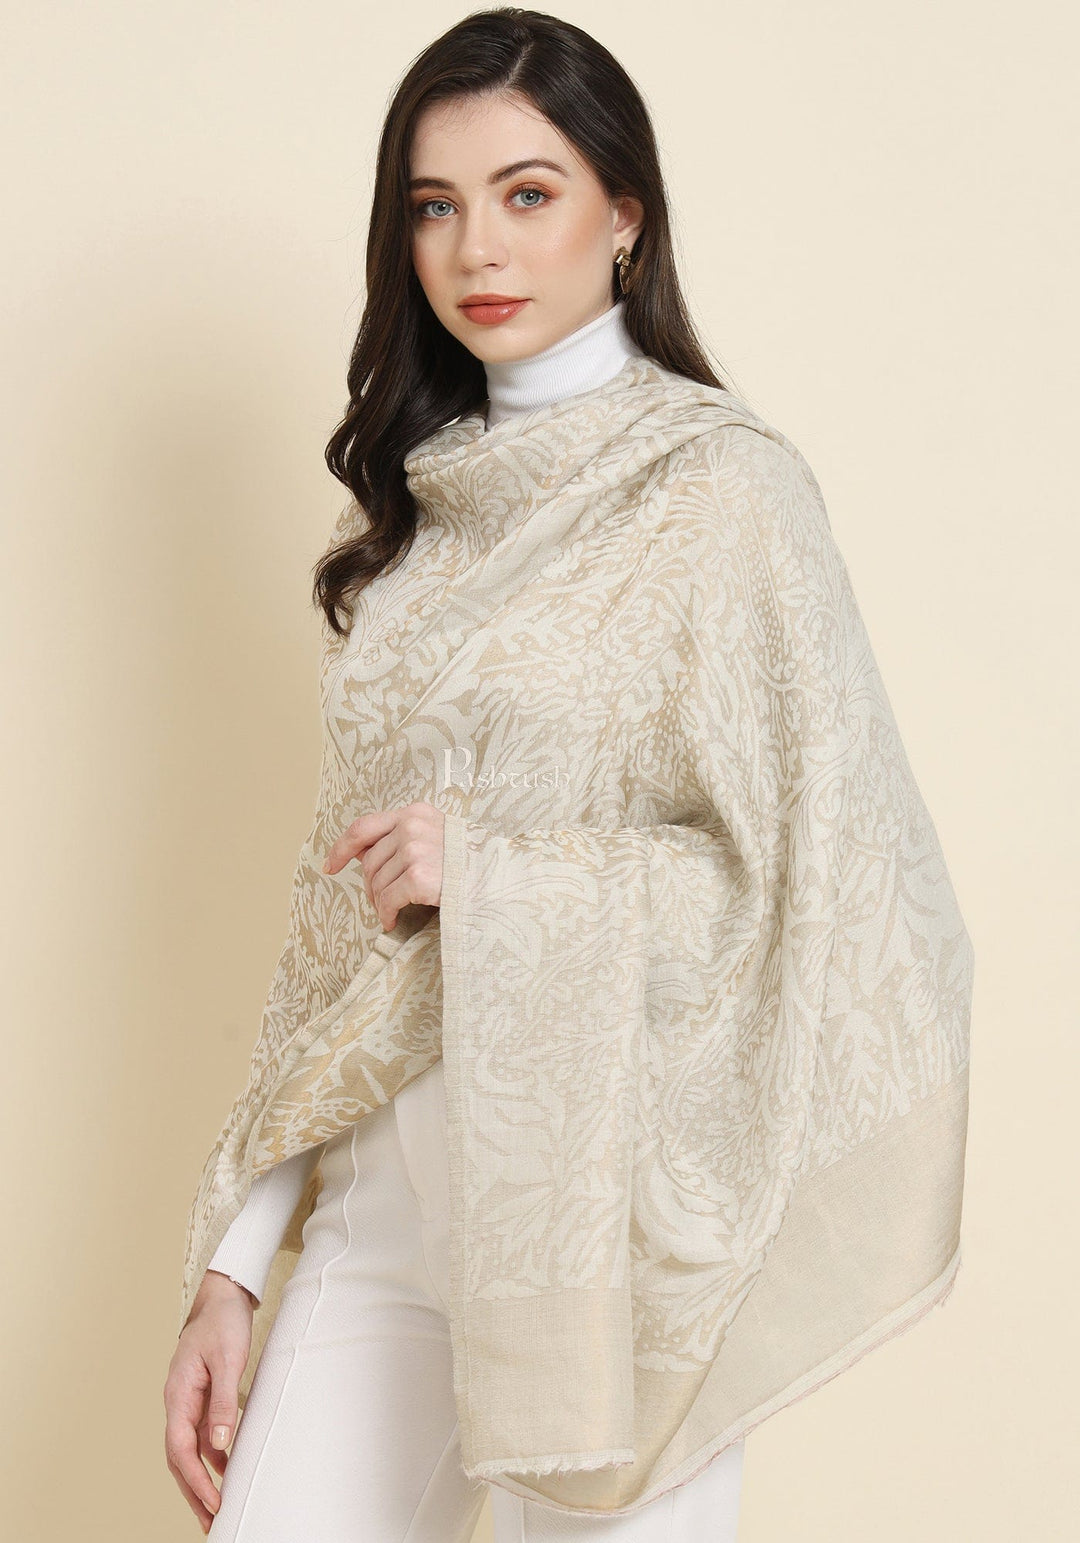 Pashtush India Womens Shawls Pashtush Womens Extra Fine Wool Shawl, Twilight Reversible Design, Ivory